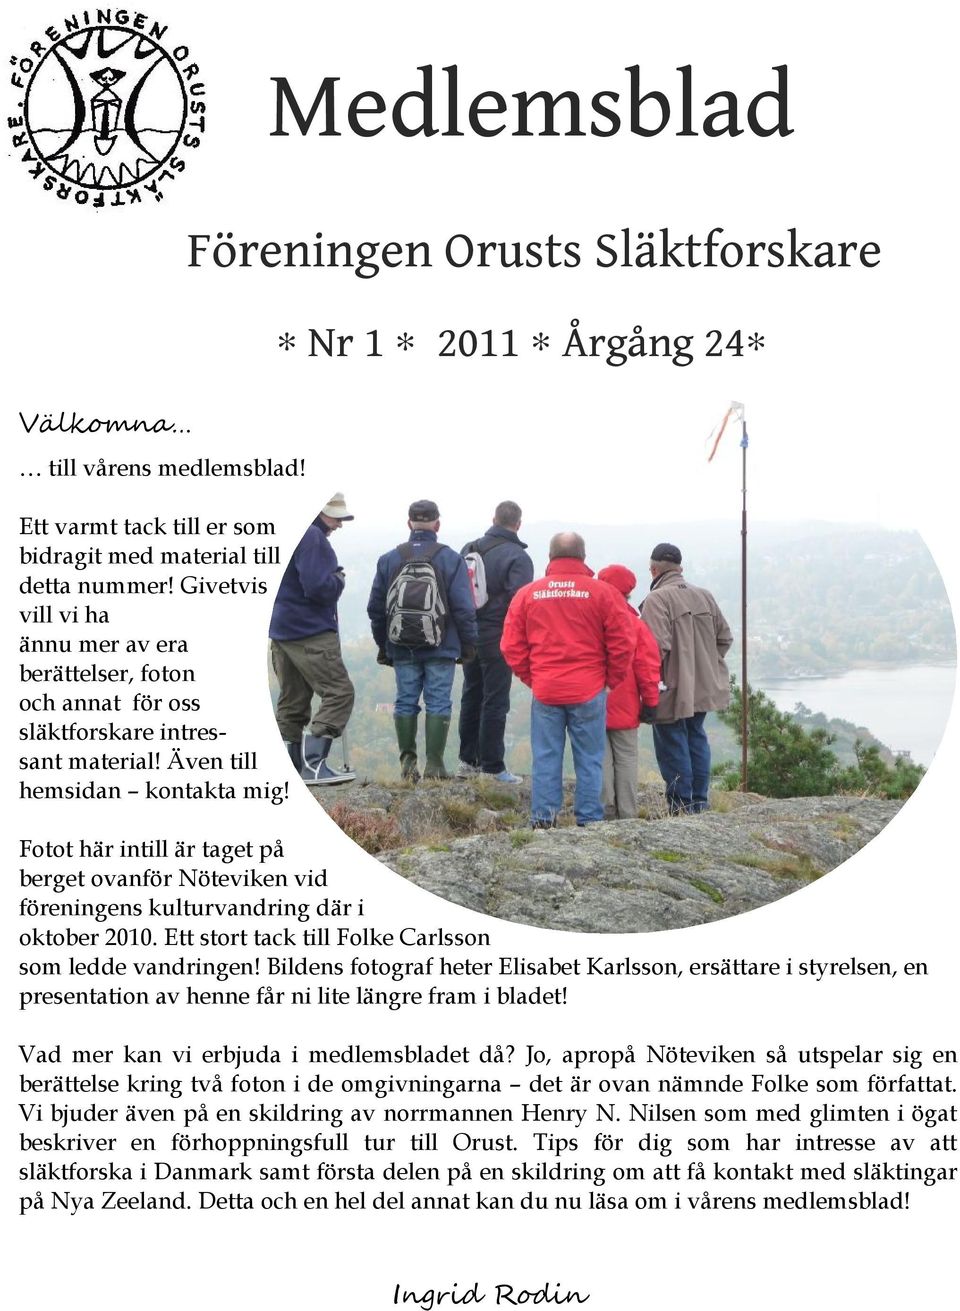 Fotot här intill är taget på berget ovanför Nöteviken vid föreningens kulturvandring där i oktober 2010. Ett stort tack till Folke Carlsson som ledde vandringen!